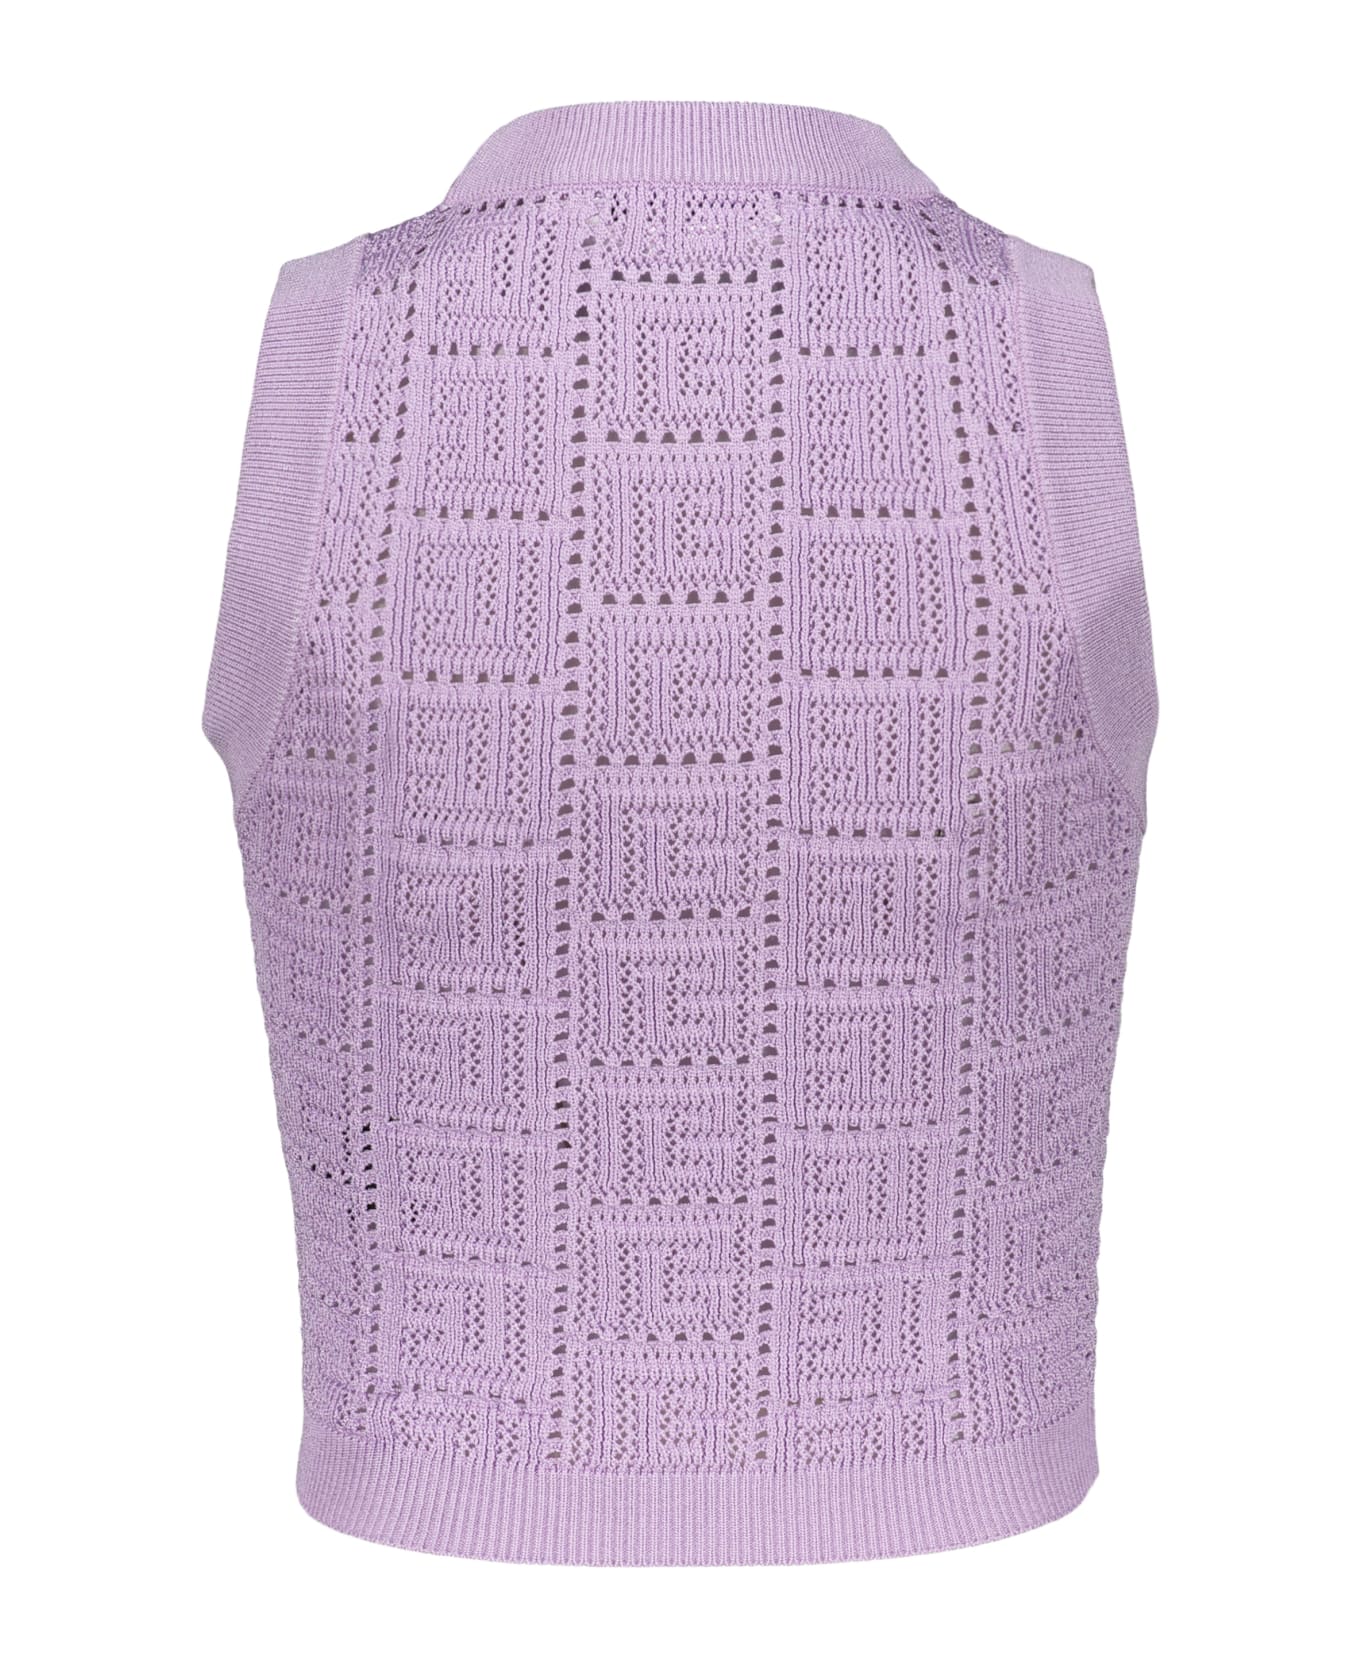 Balmain Knitted Viscosa-blend Top - Lilac ベスト